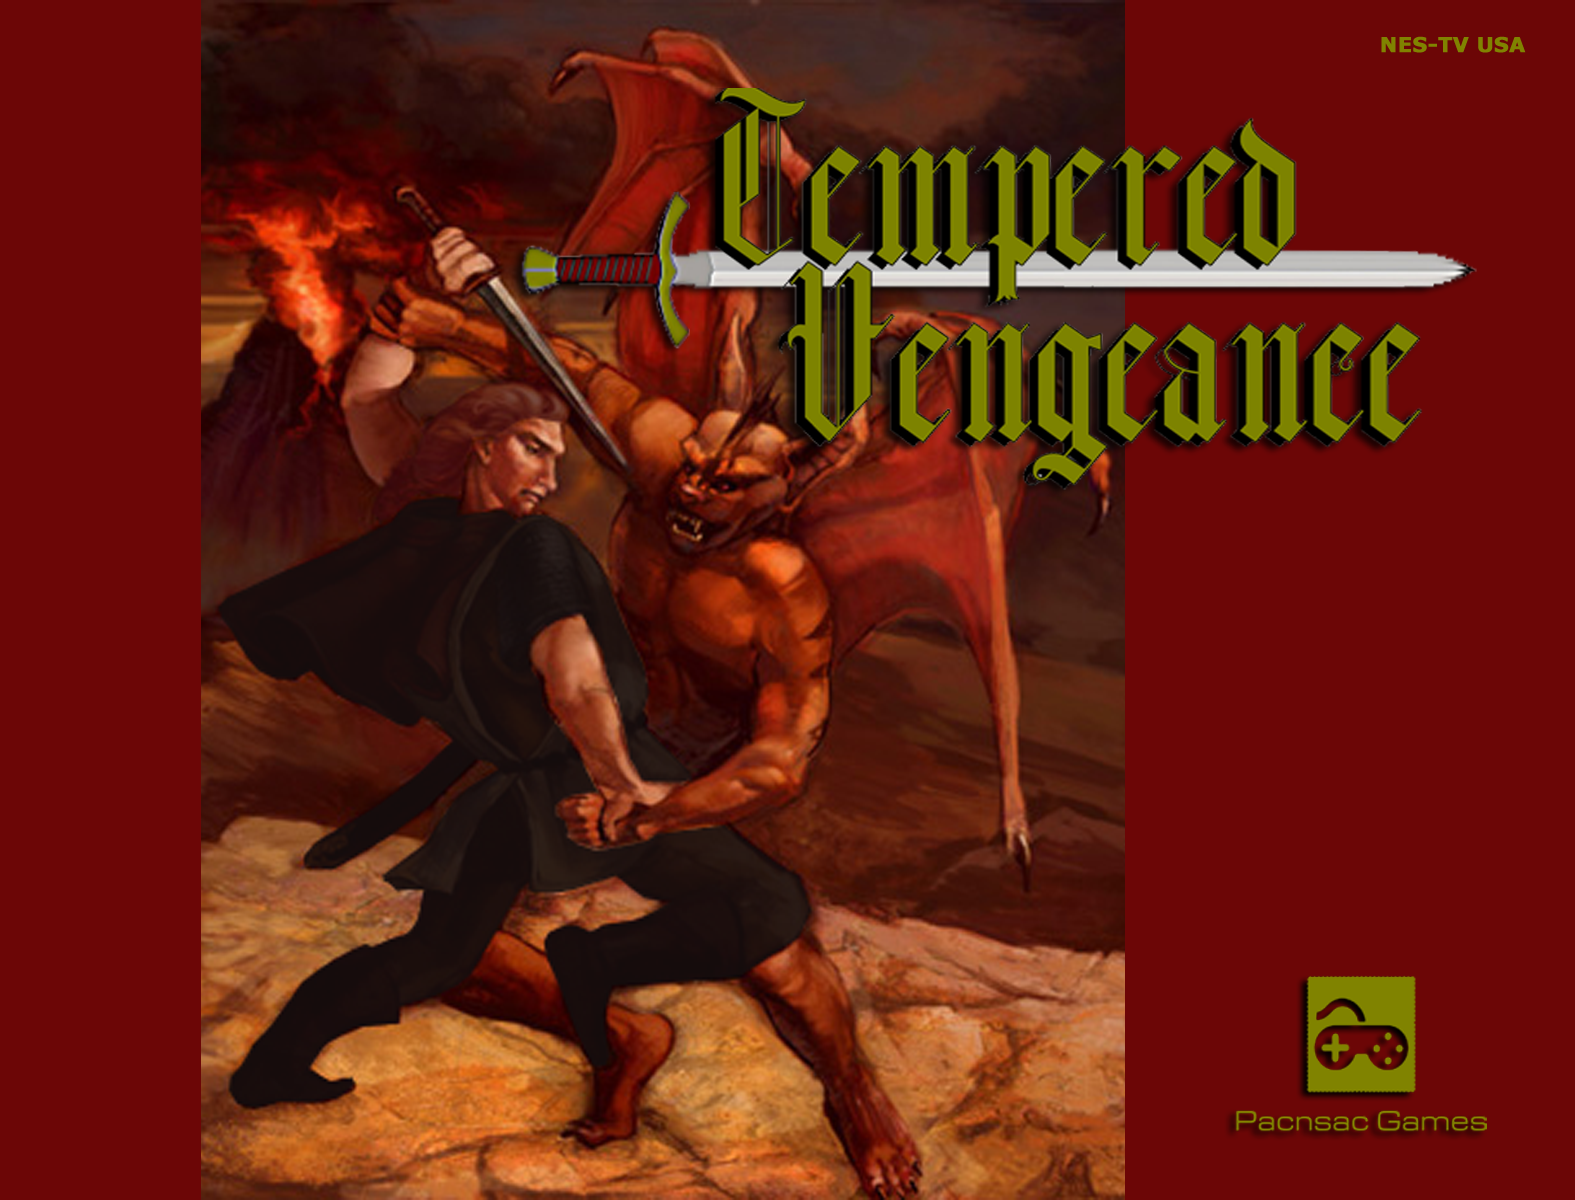 Tempered Vengeance